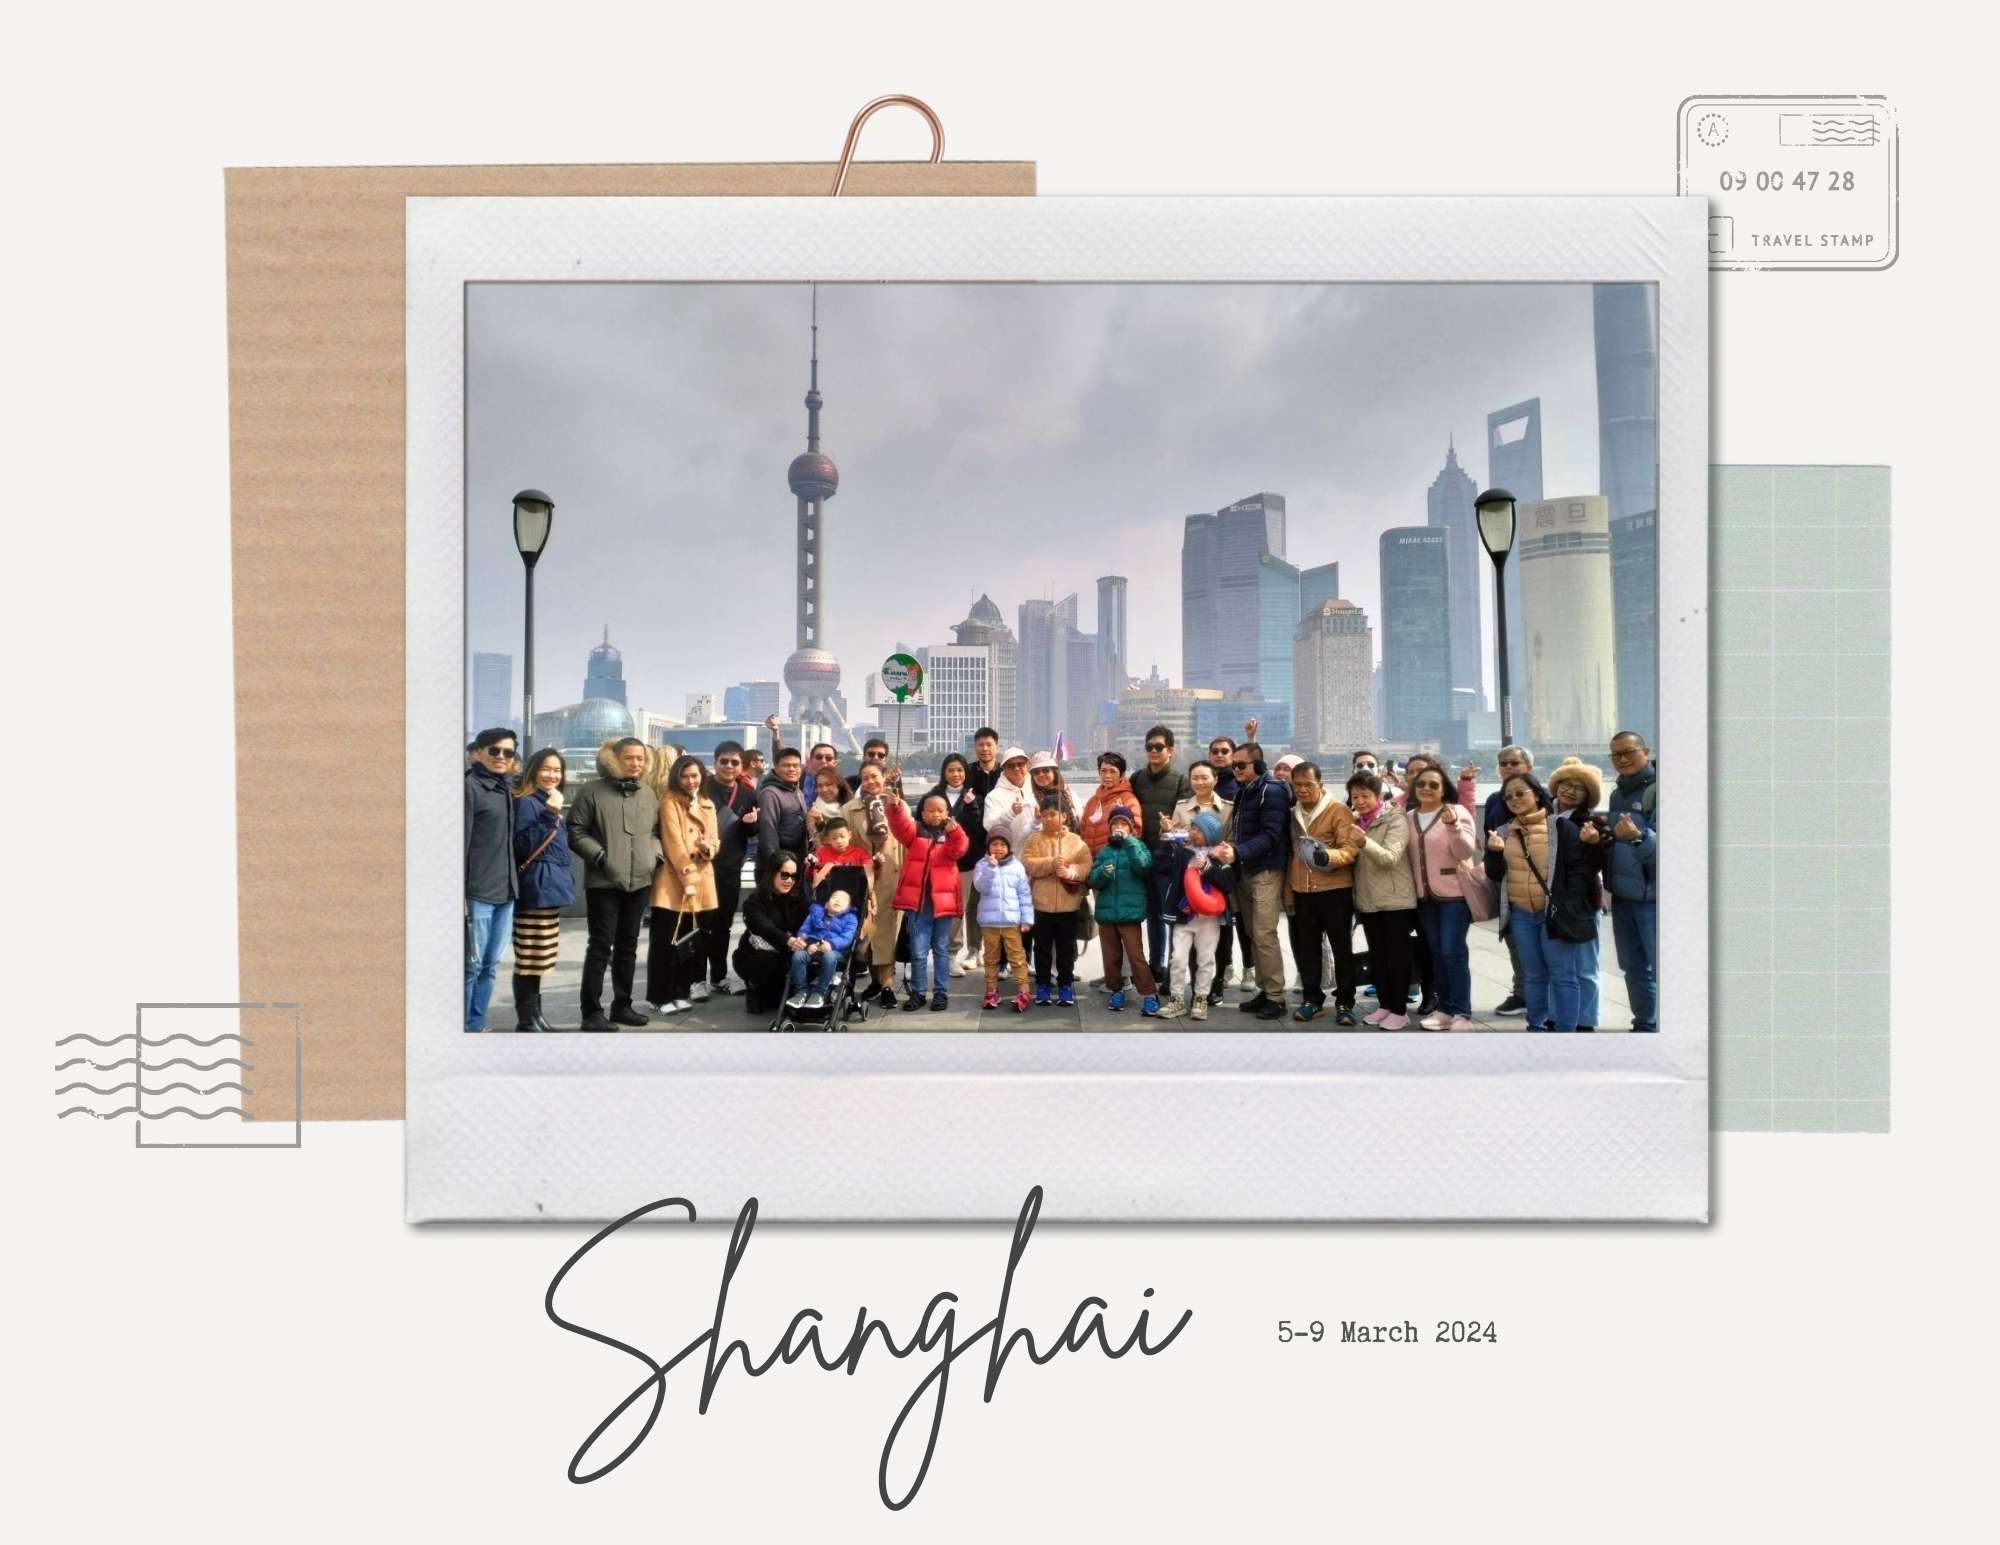 tour-shanghai-tman-freebirdtour